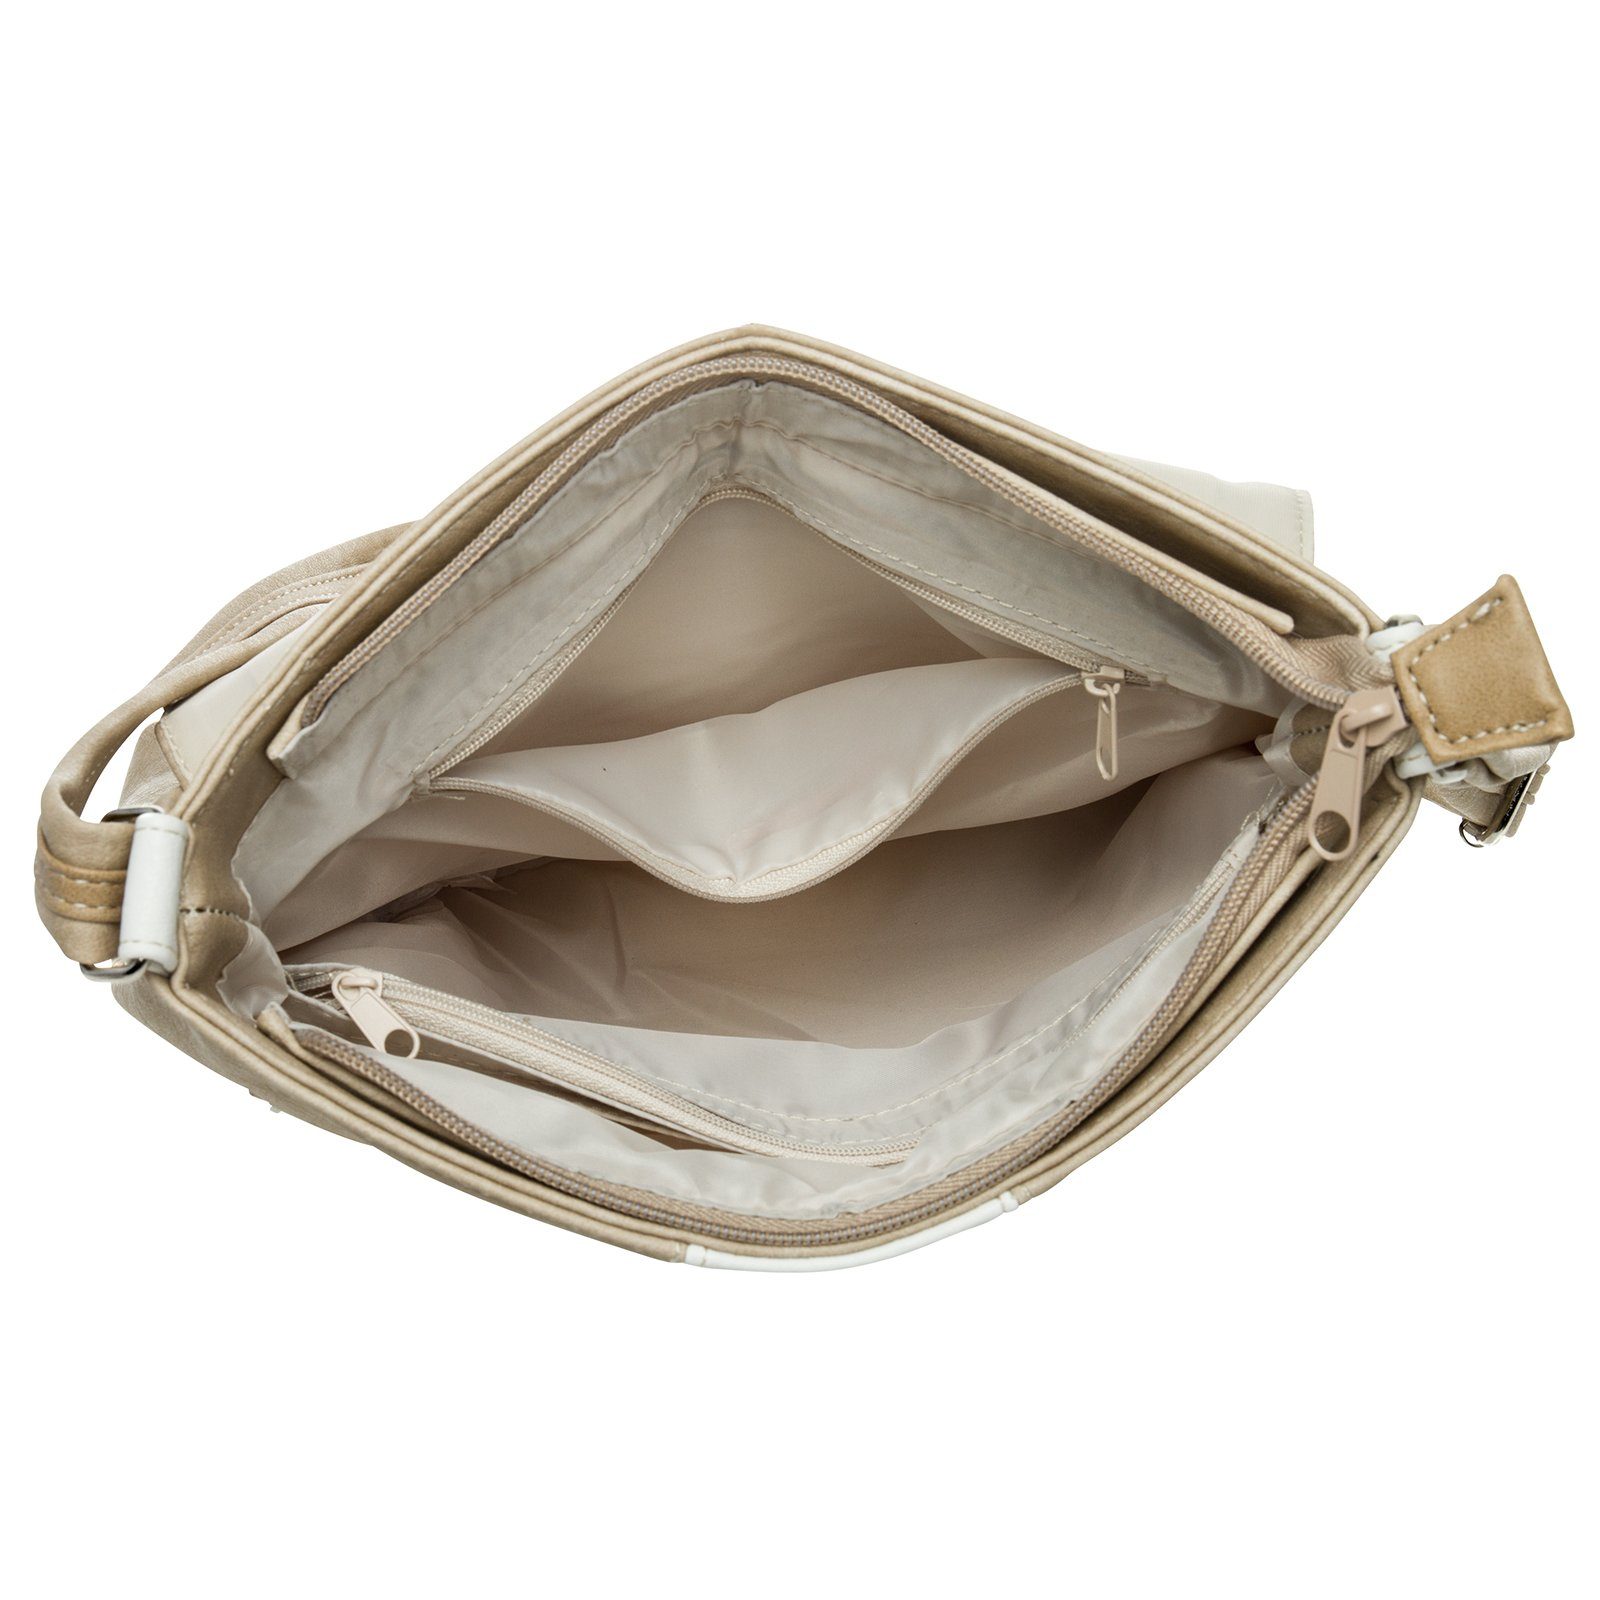 weiß Umhängetasche Rucksack Caspar Tasche Umhängetasche Modelle - diverse beige Damen Handtasche Umhängetasche #3851 TS1028